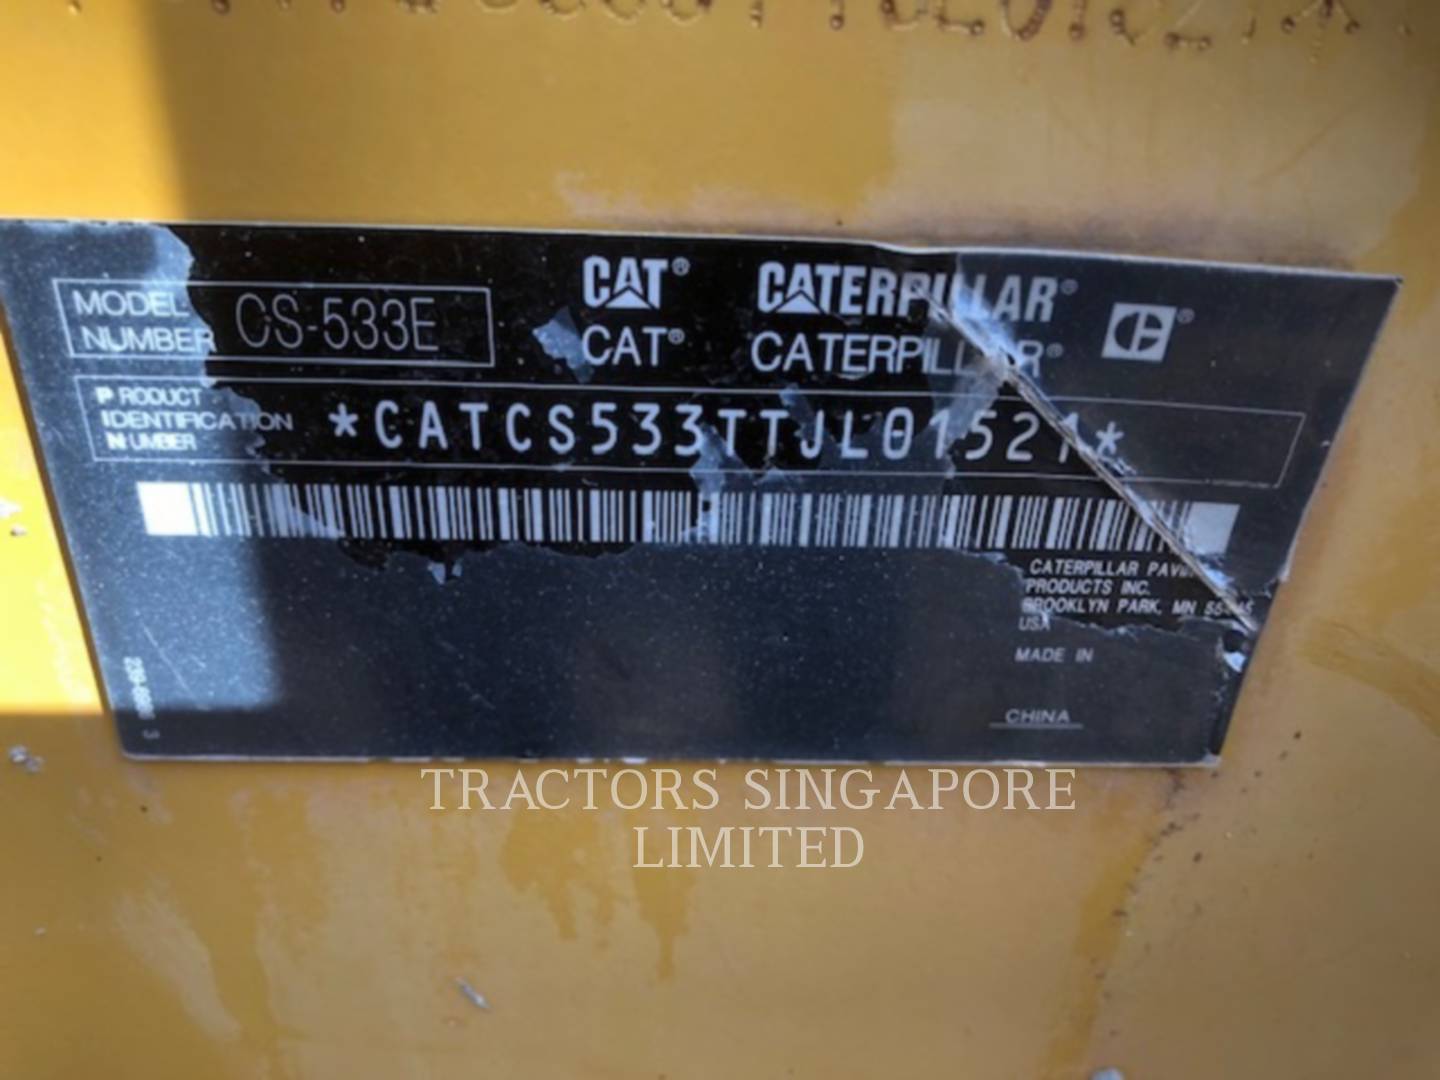 wtk?JHNyYz1kNDY4ZTQ4ZDRmMWY3YjA0ODZlYjJlMzEwZTE5M2MyZCYkdHh0PVRSQUNUT1JTJTIwU0lOR0FQT1JFJTIwTElNSVRFRCYxMzAwNg== CS-533E | Tractors Singapore